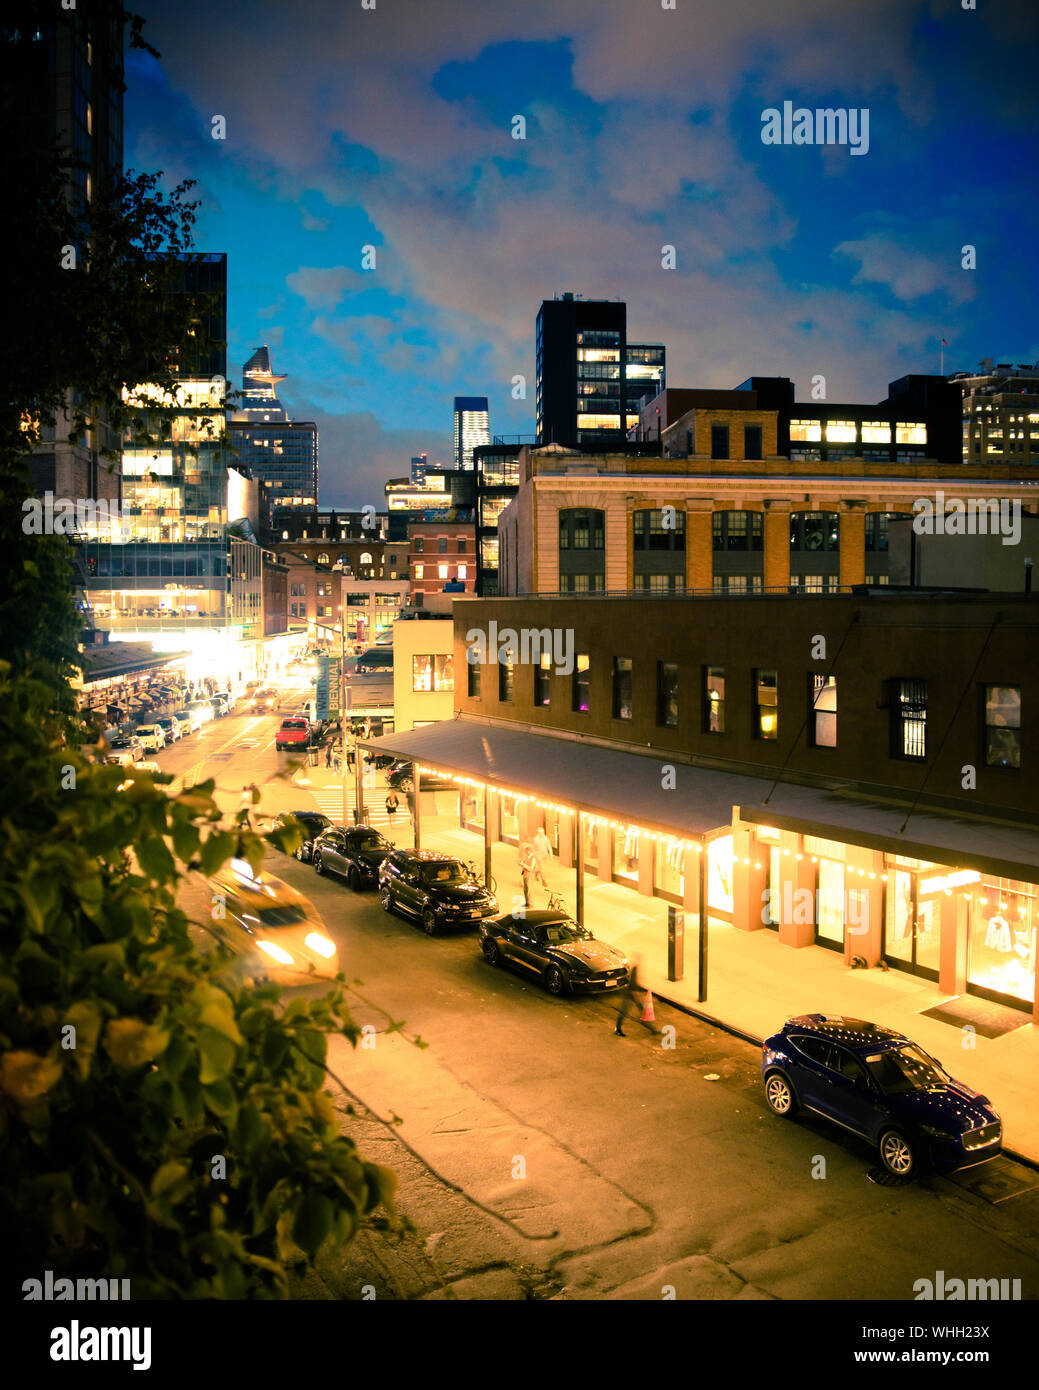 NEW YORK - 24 août 2019 - Vue de dessus de la rue de la ville dans le Meatpacking district de Manhattan vu la nuit avec des lumières. Banque D'Images